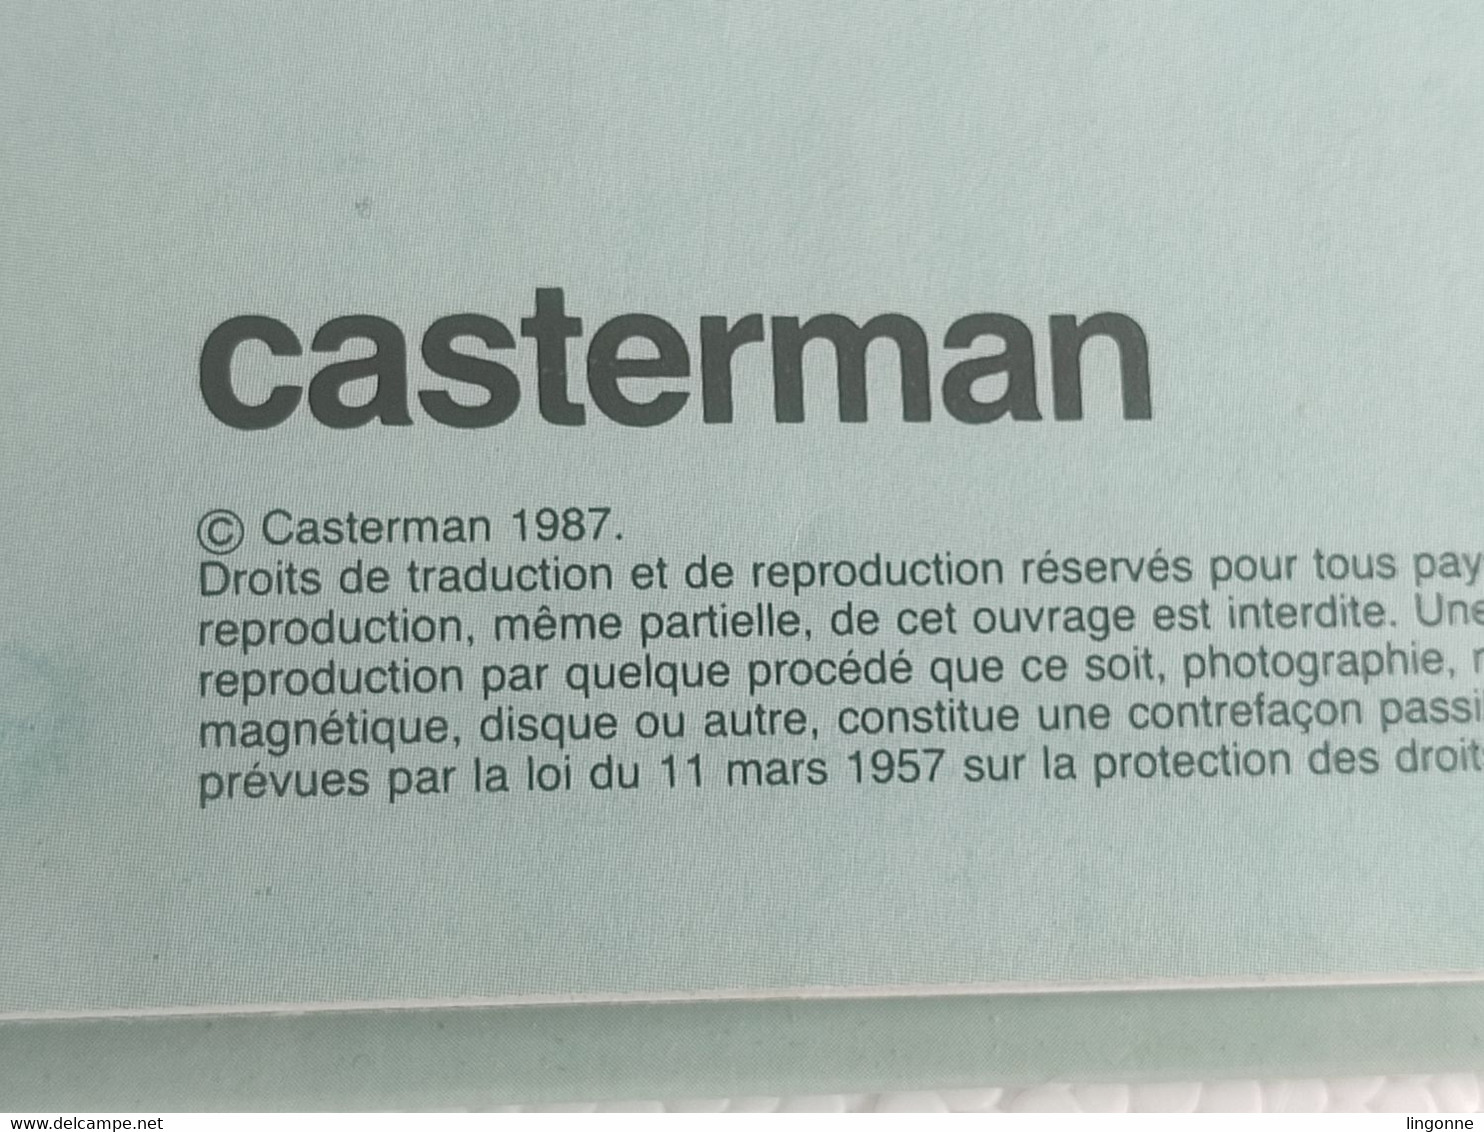 MARTINE DANS LA FORET - COLLECTION FARANDOLE 1987 - Casterman